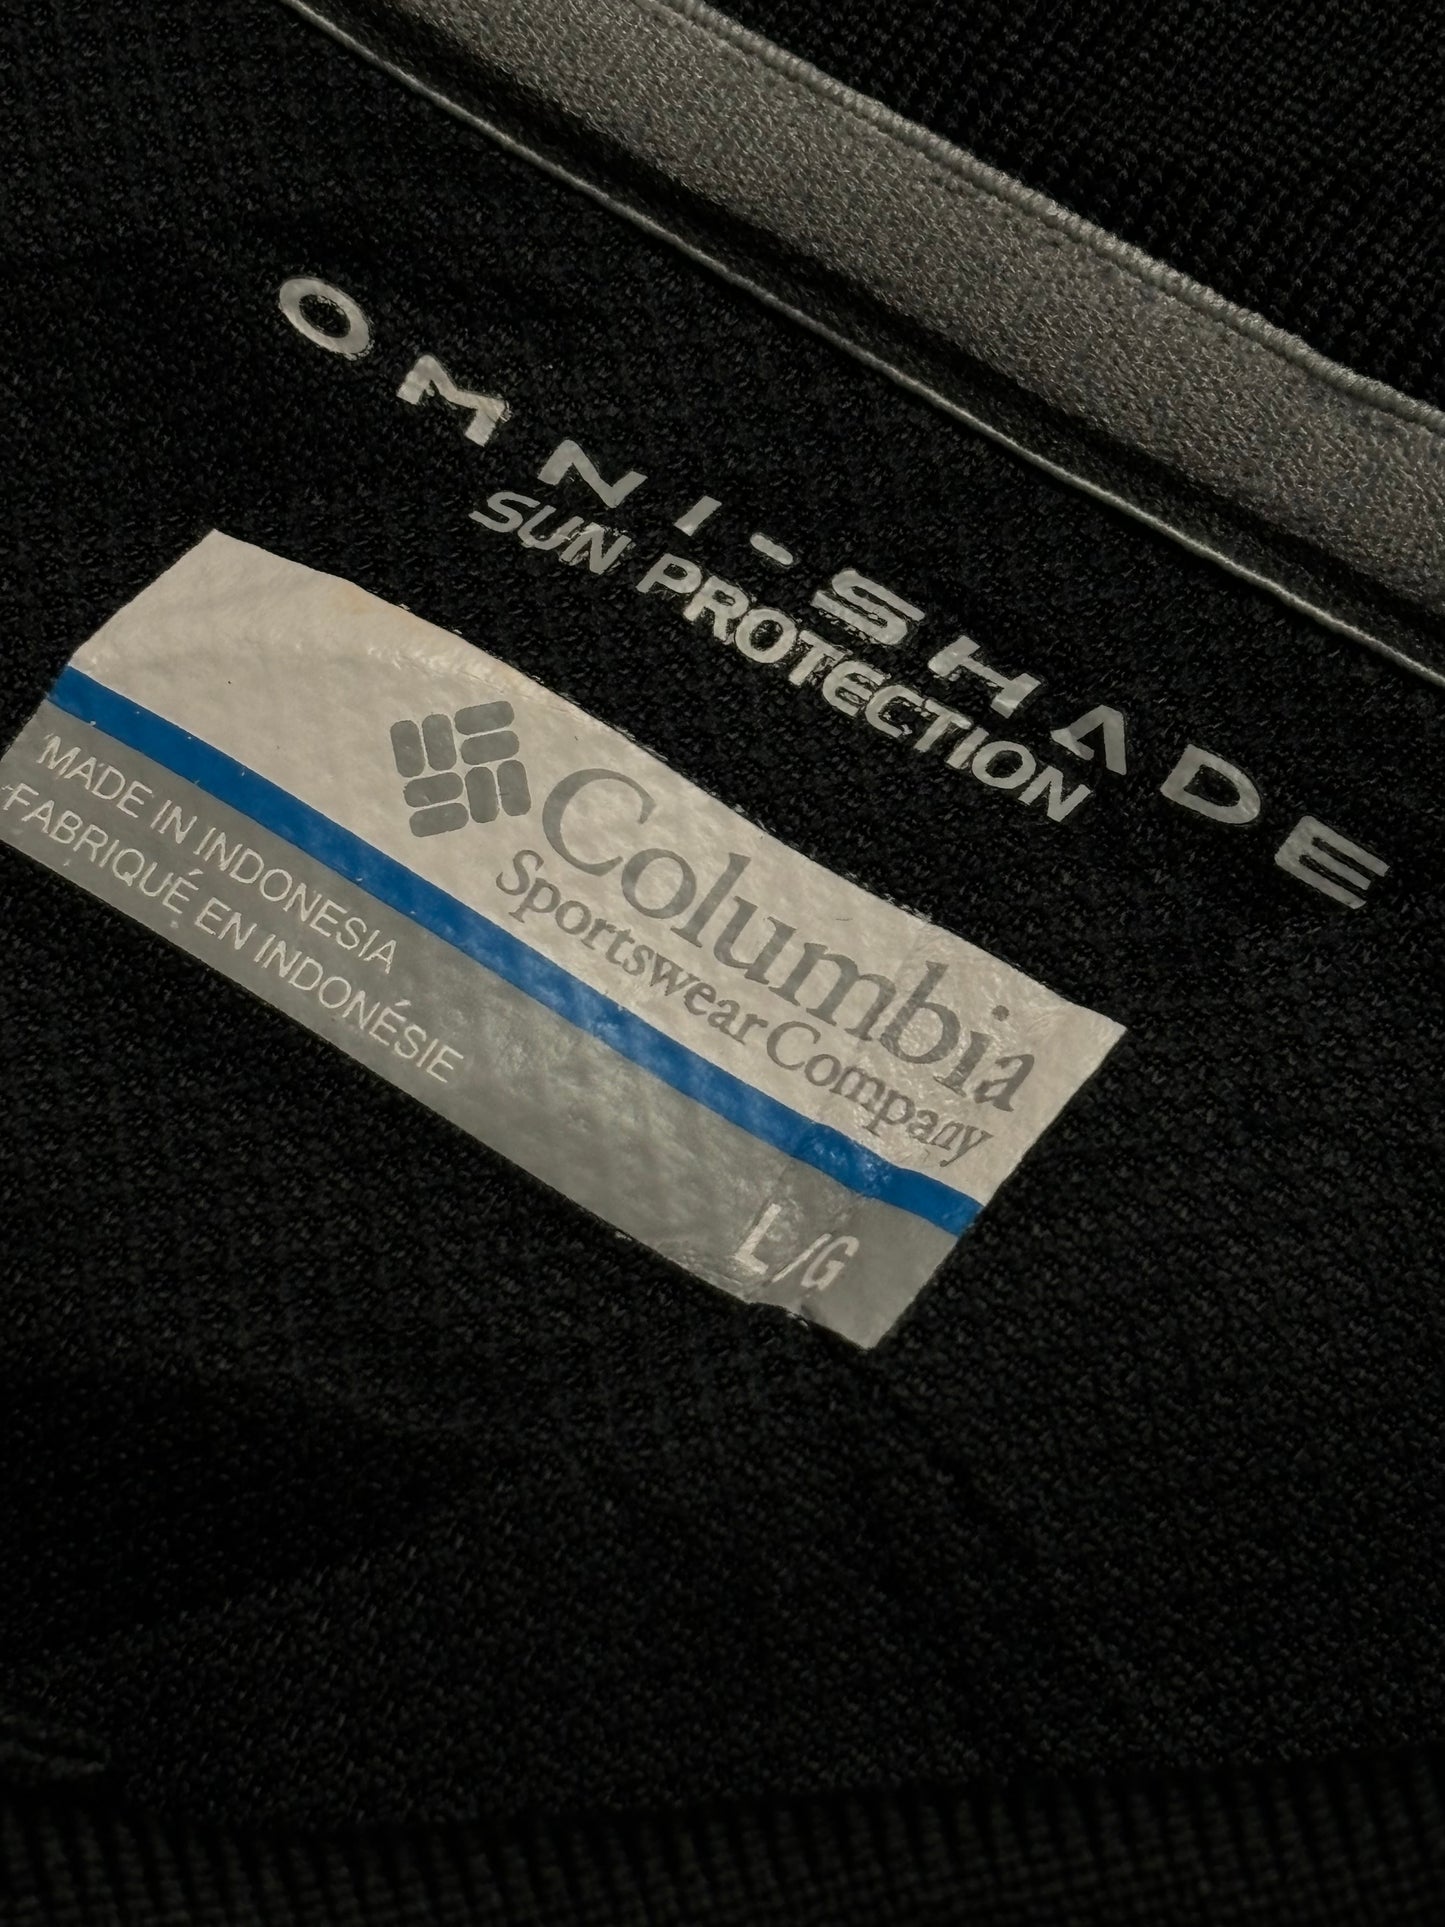 Polito Columbia OmniShade Slim Fit - Medium